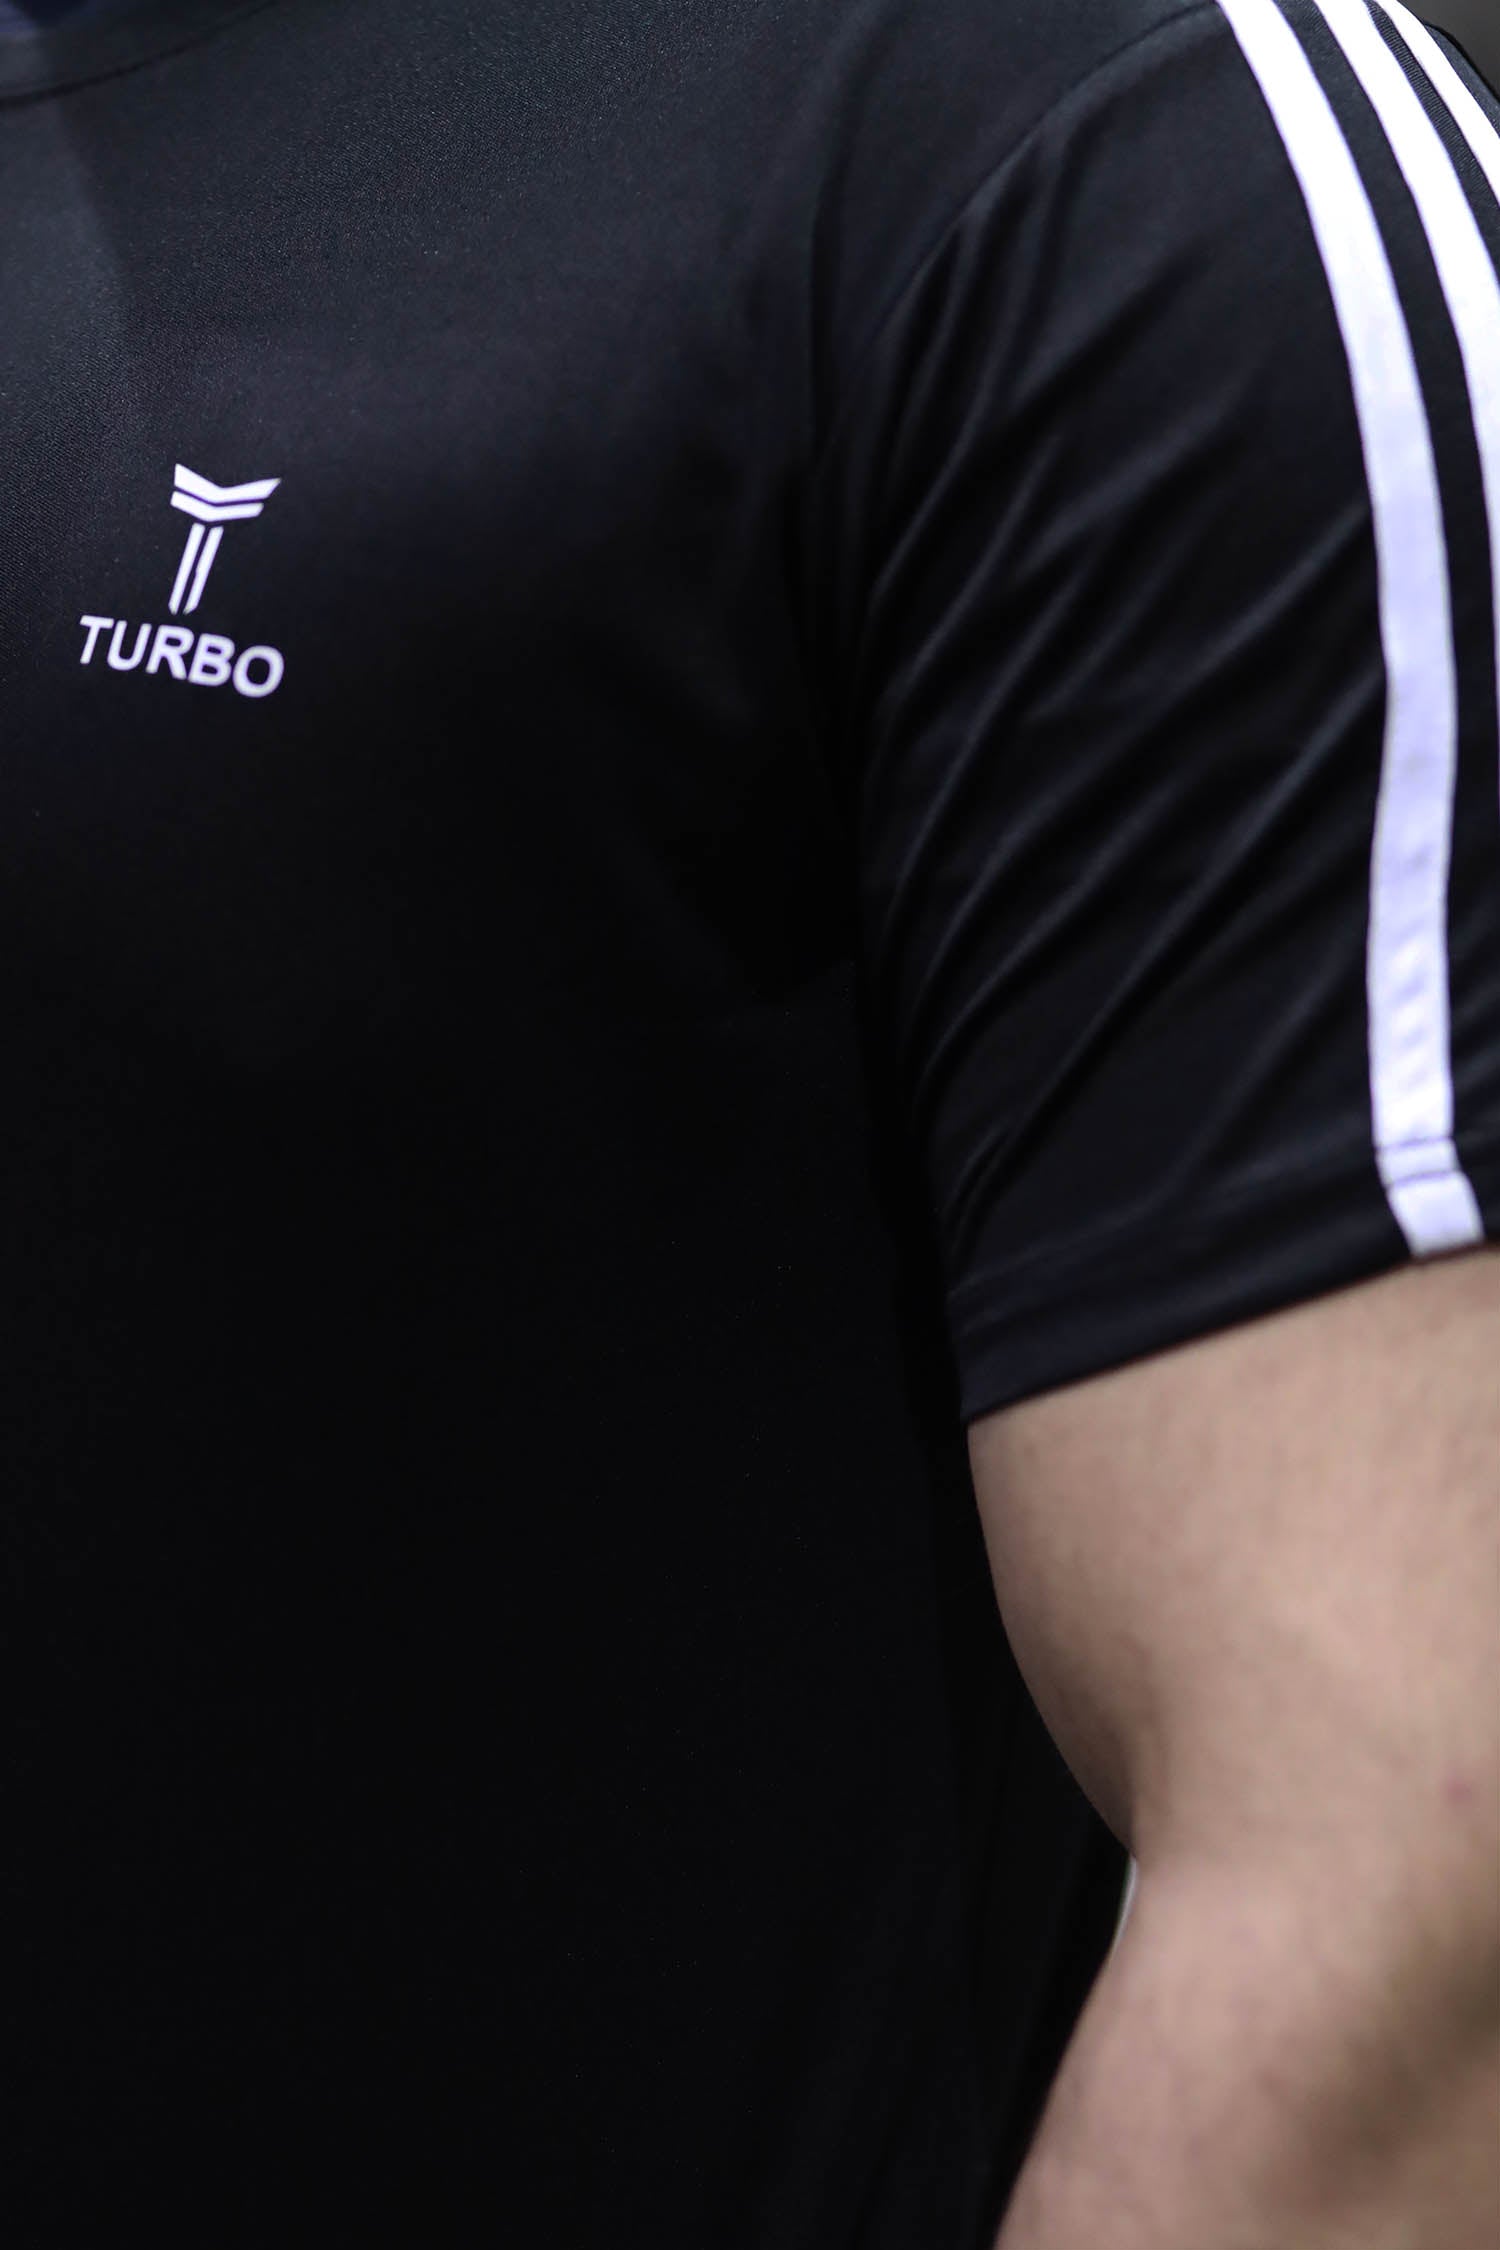 Turbo Signature Quickdry Tracksuit In Black